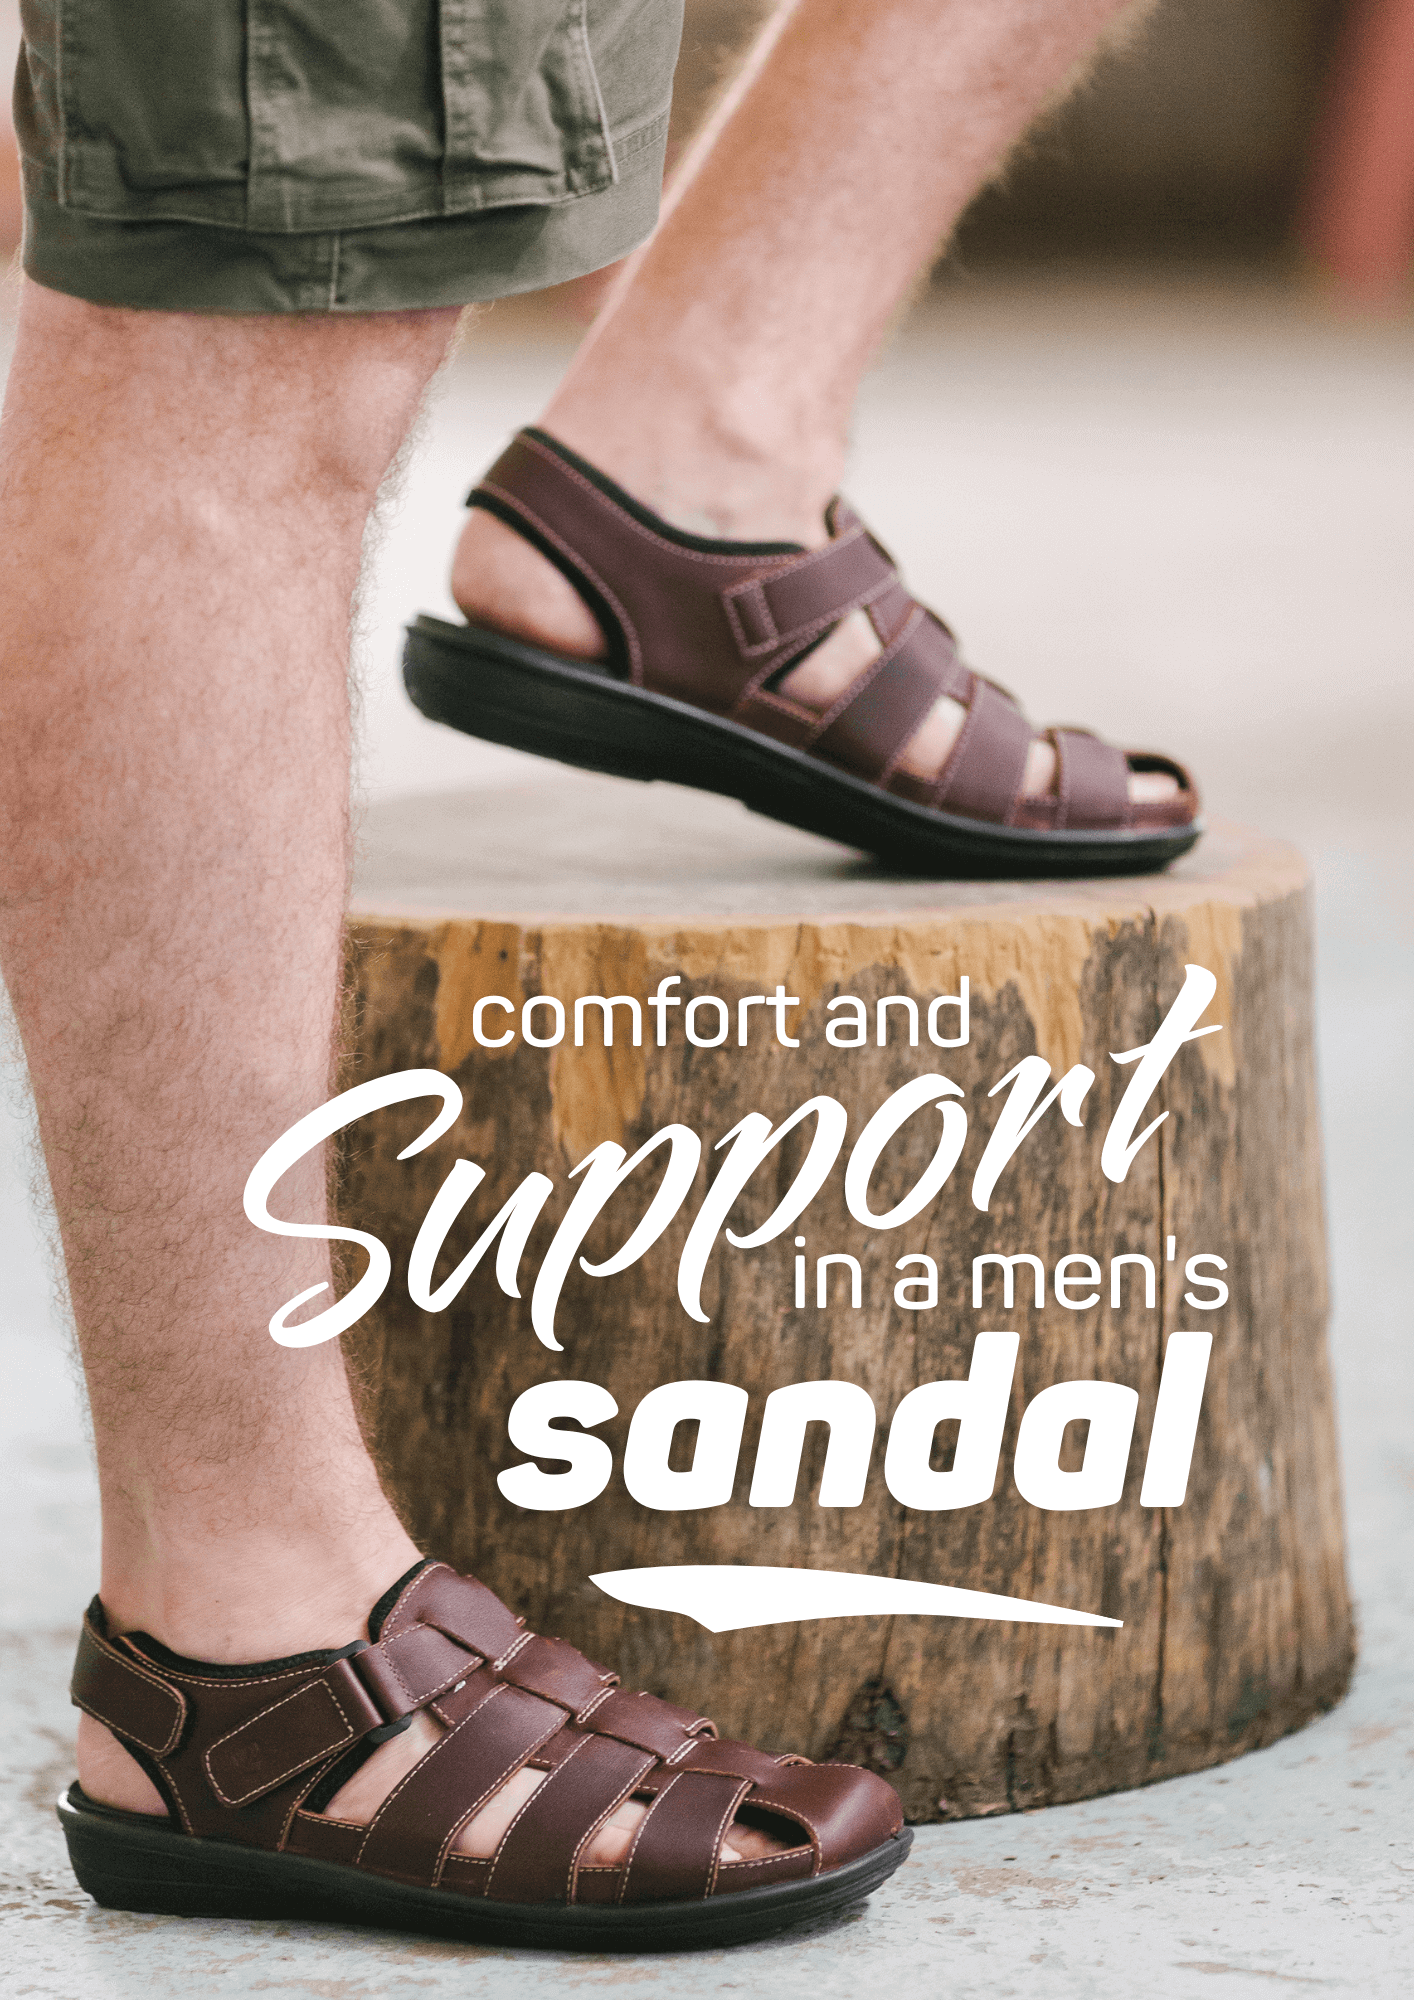 revere sandals for men